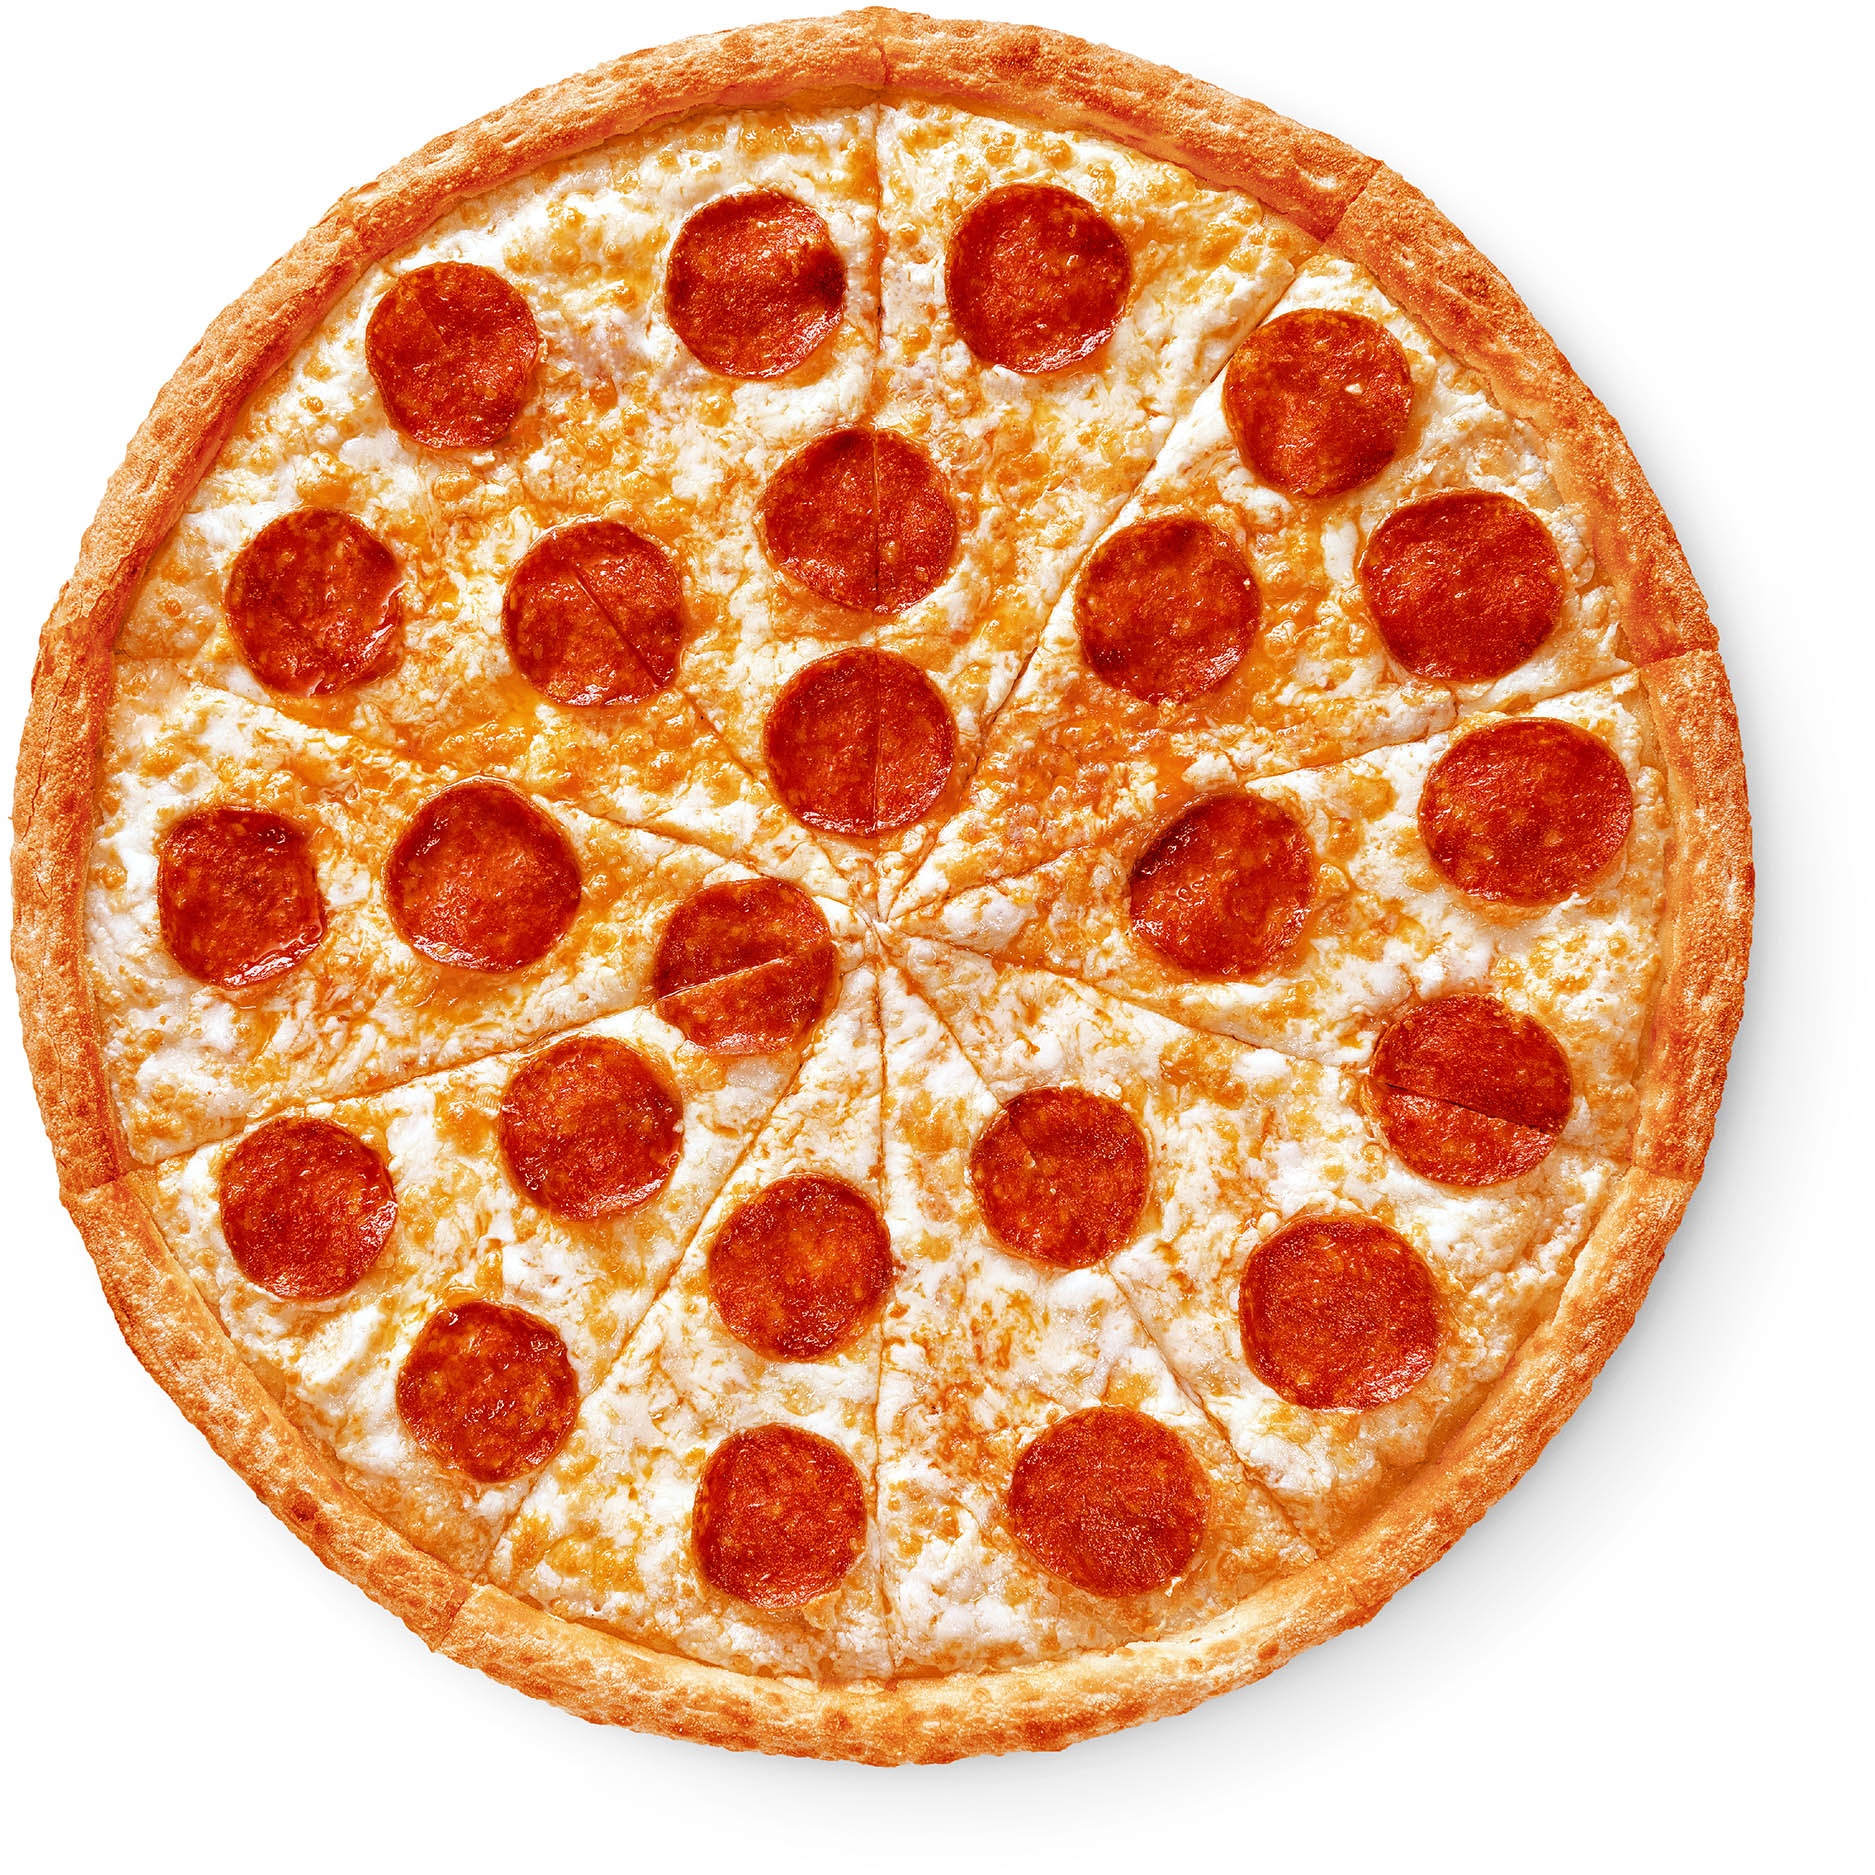 состав пиццы пепперони классическая фото 52